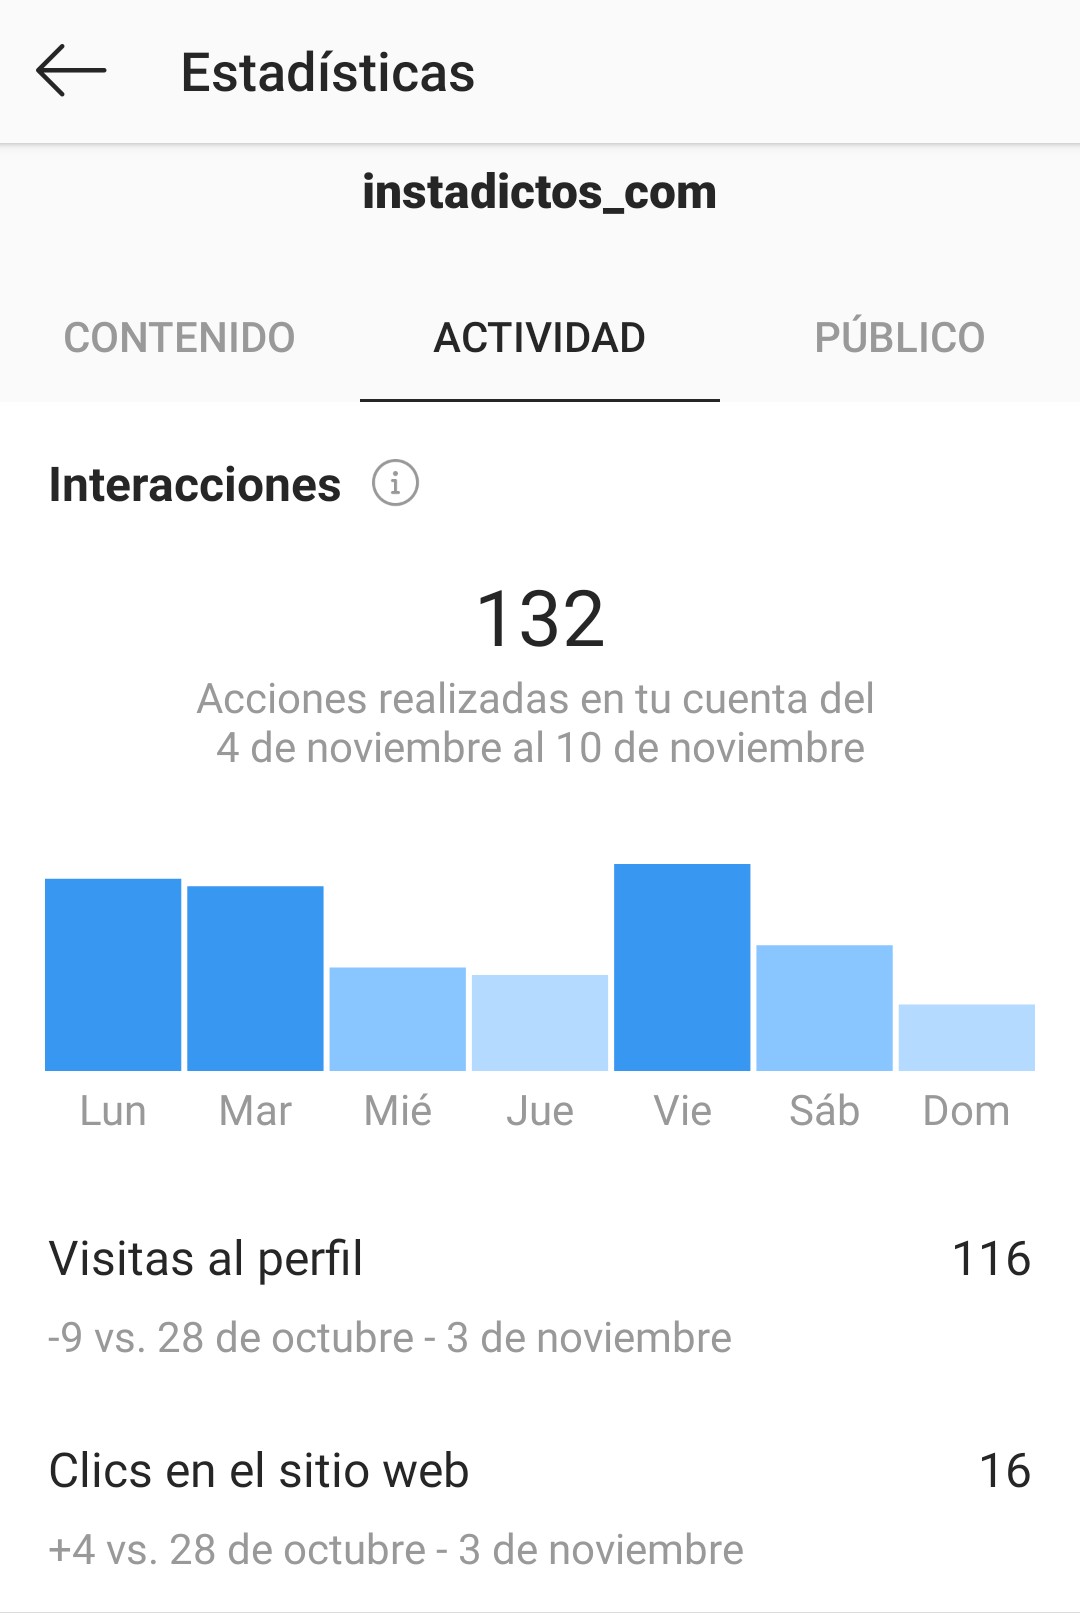 Estadísticas en Instagram | Posicionamiento en Instagram